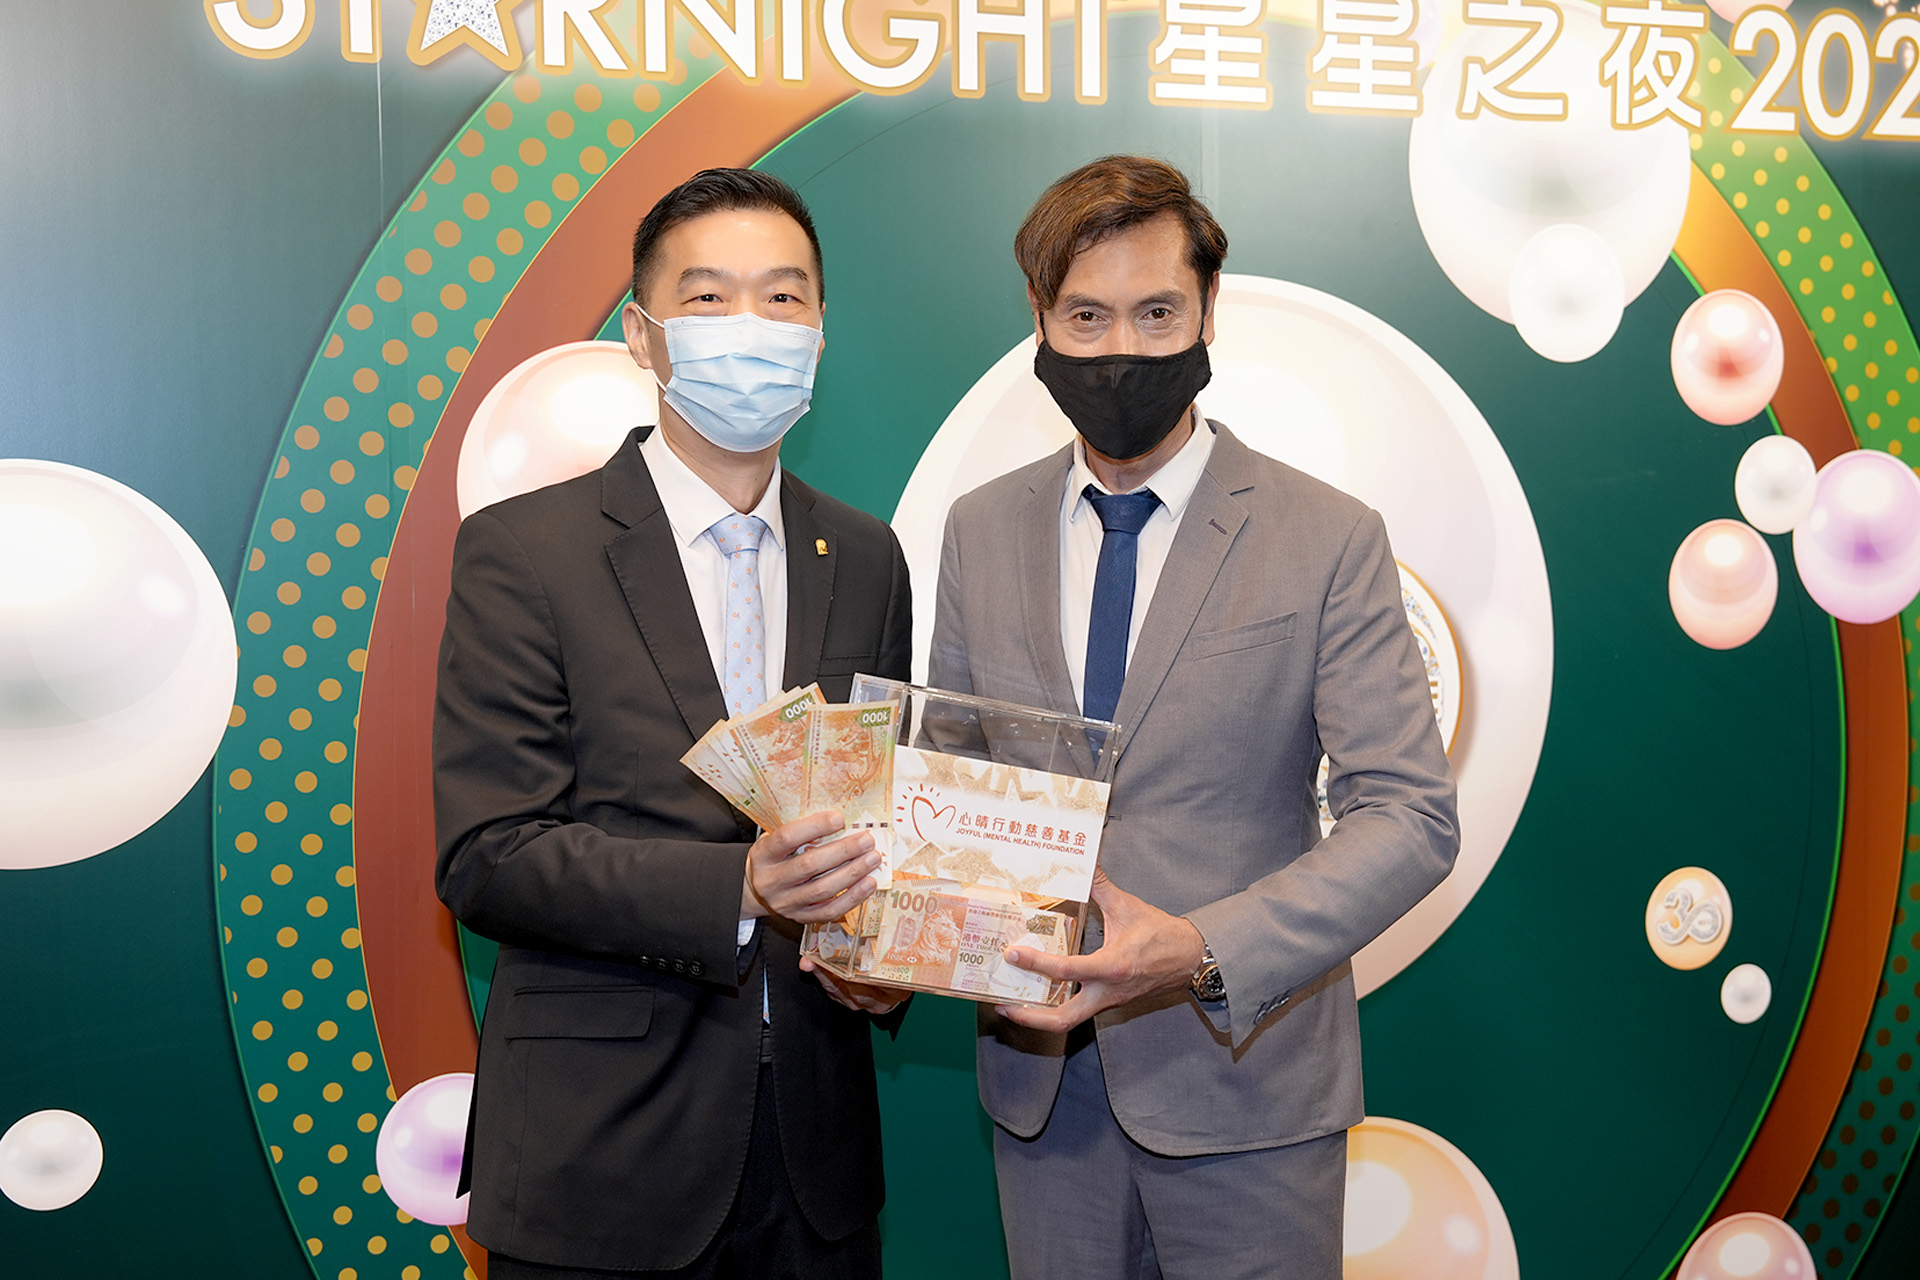 恭賀巫志賢先生從星級百萬富翁遊戲贏取HK$10,000獎金並與公司合共捐助HK$8000予「心晴行動慈善基金」